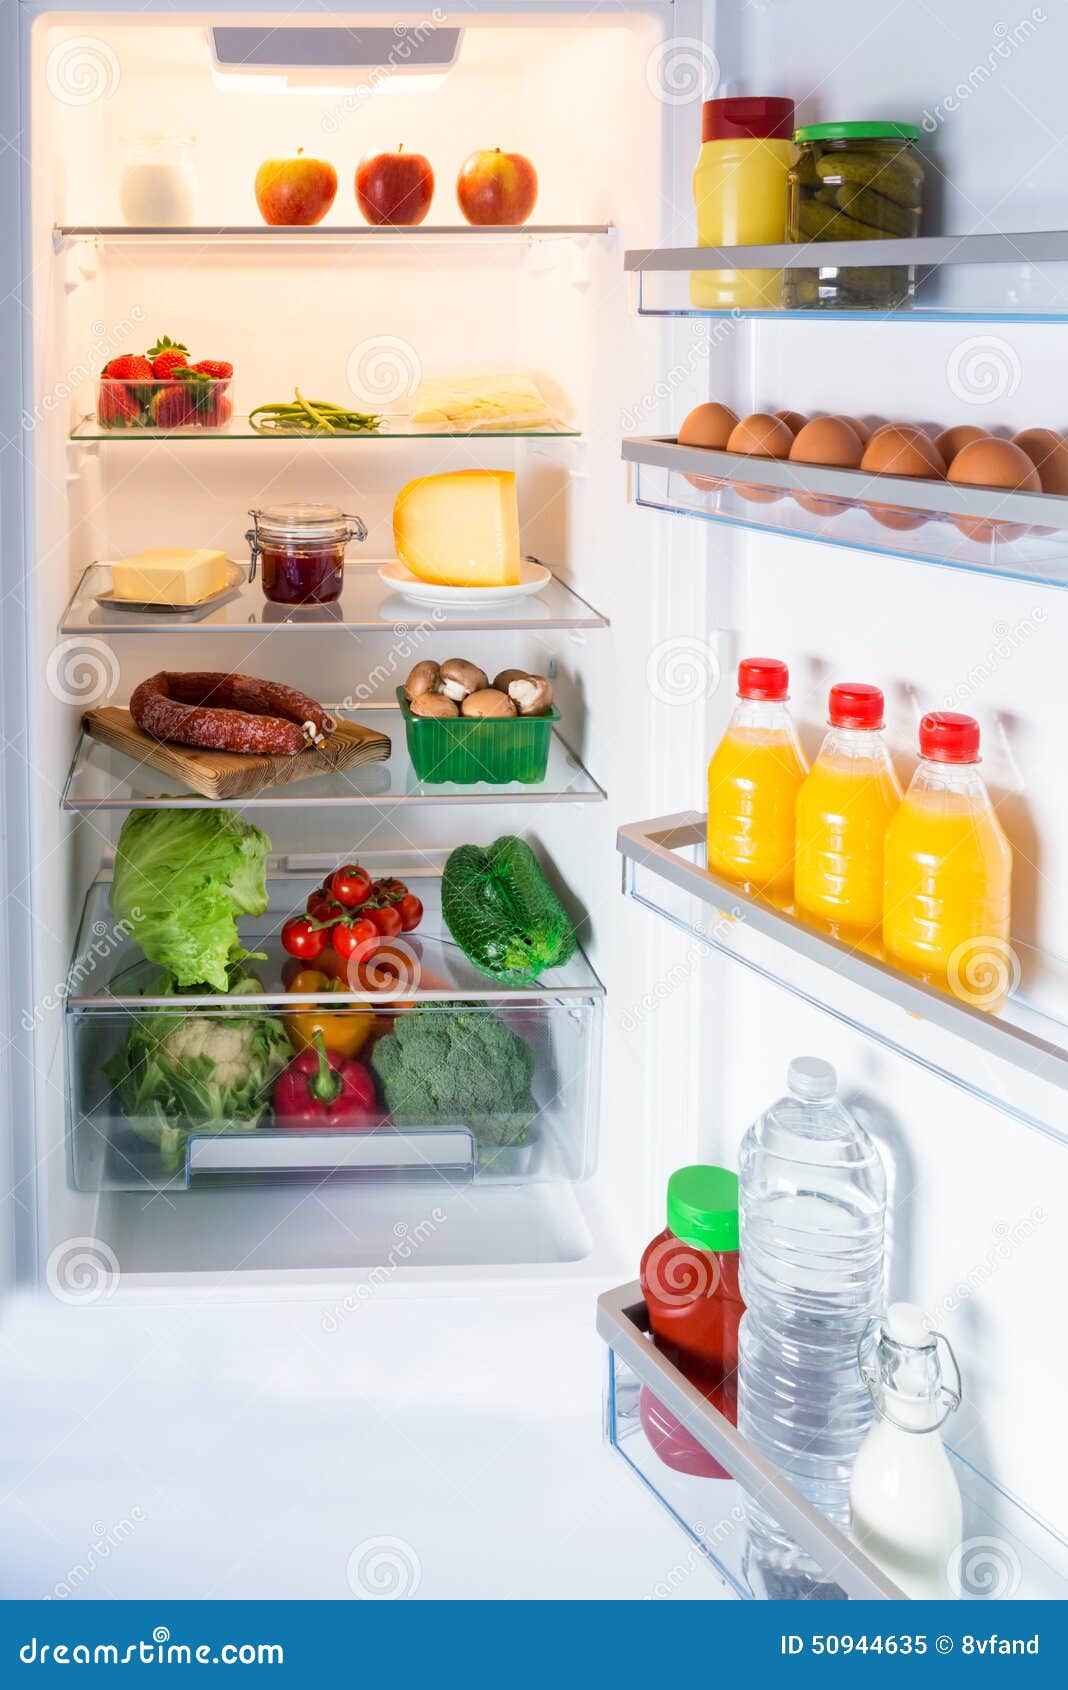 冰箱蔬菜图片大全-冰箱蔬菜高清图片下载-觅知网